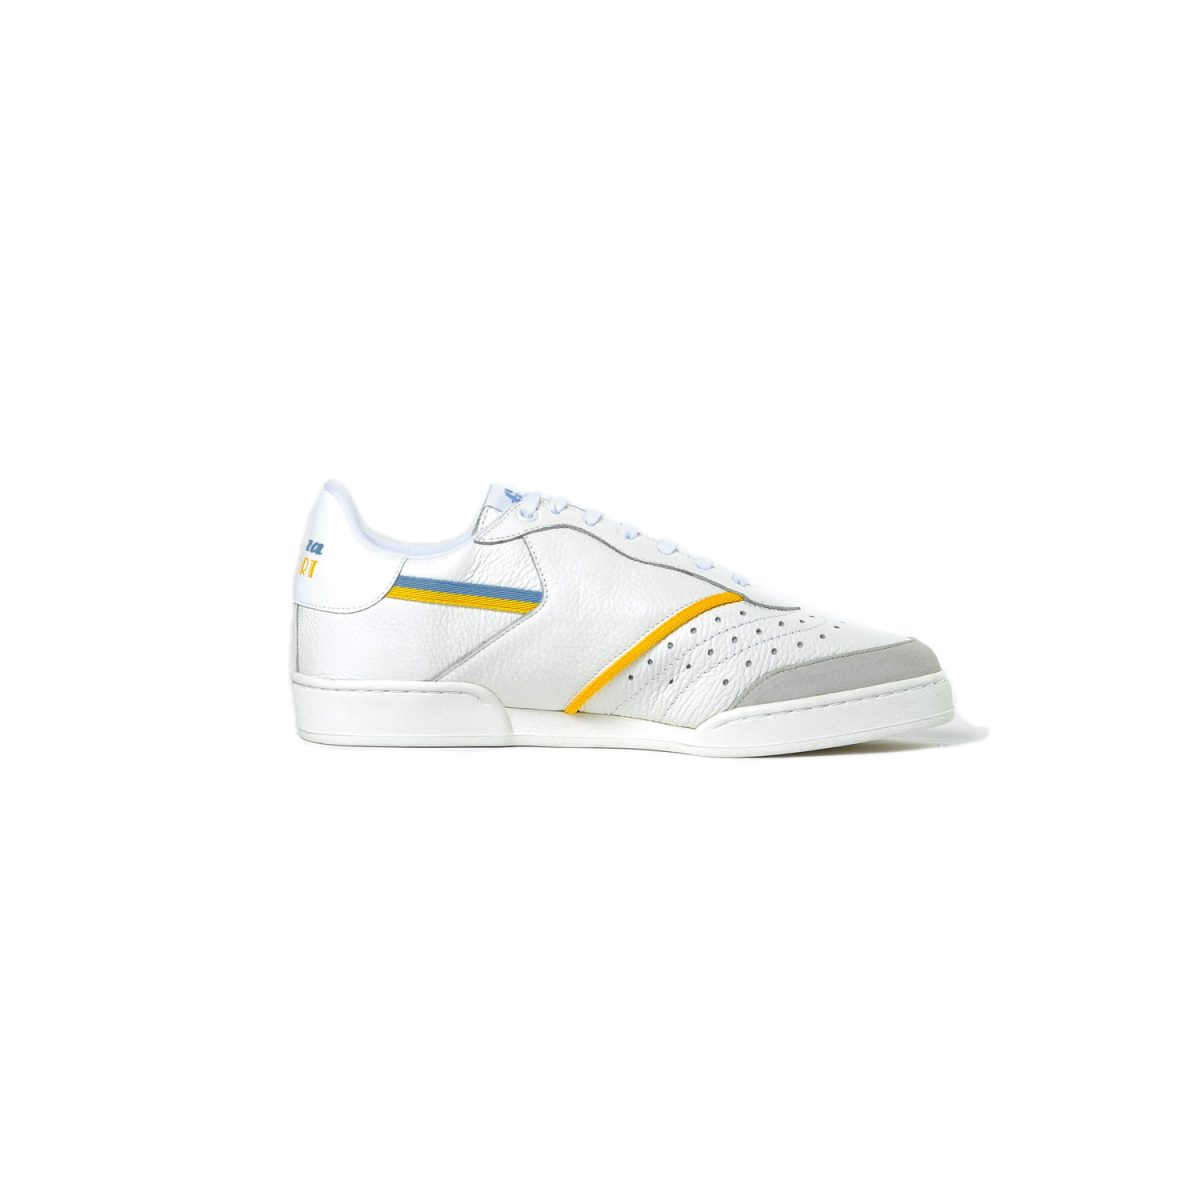 Tisza shoes - Sport - White-yellow-blue